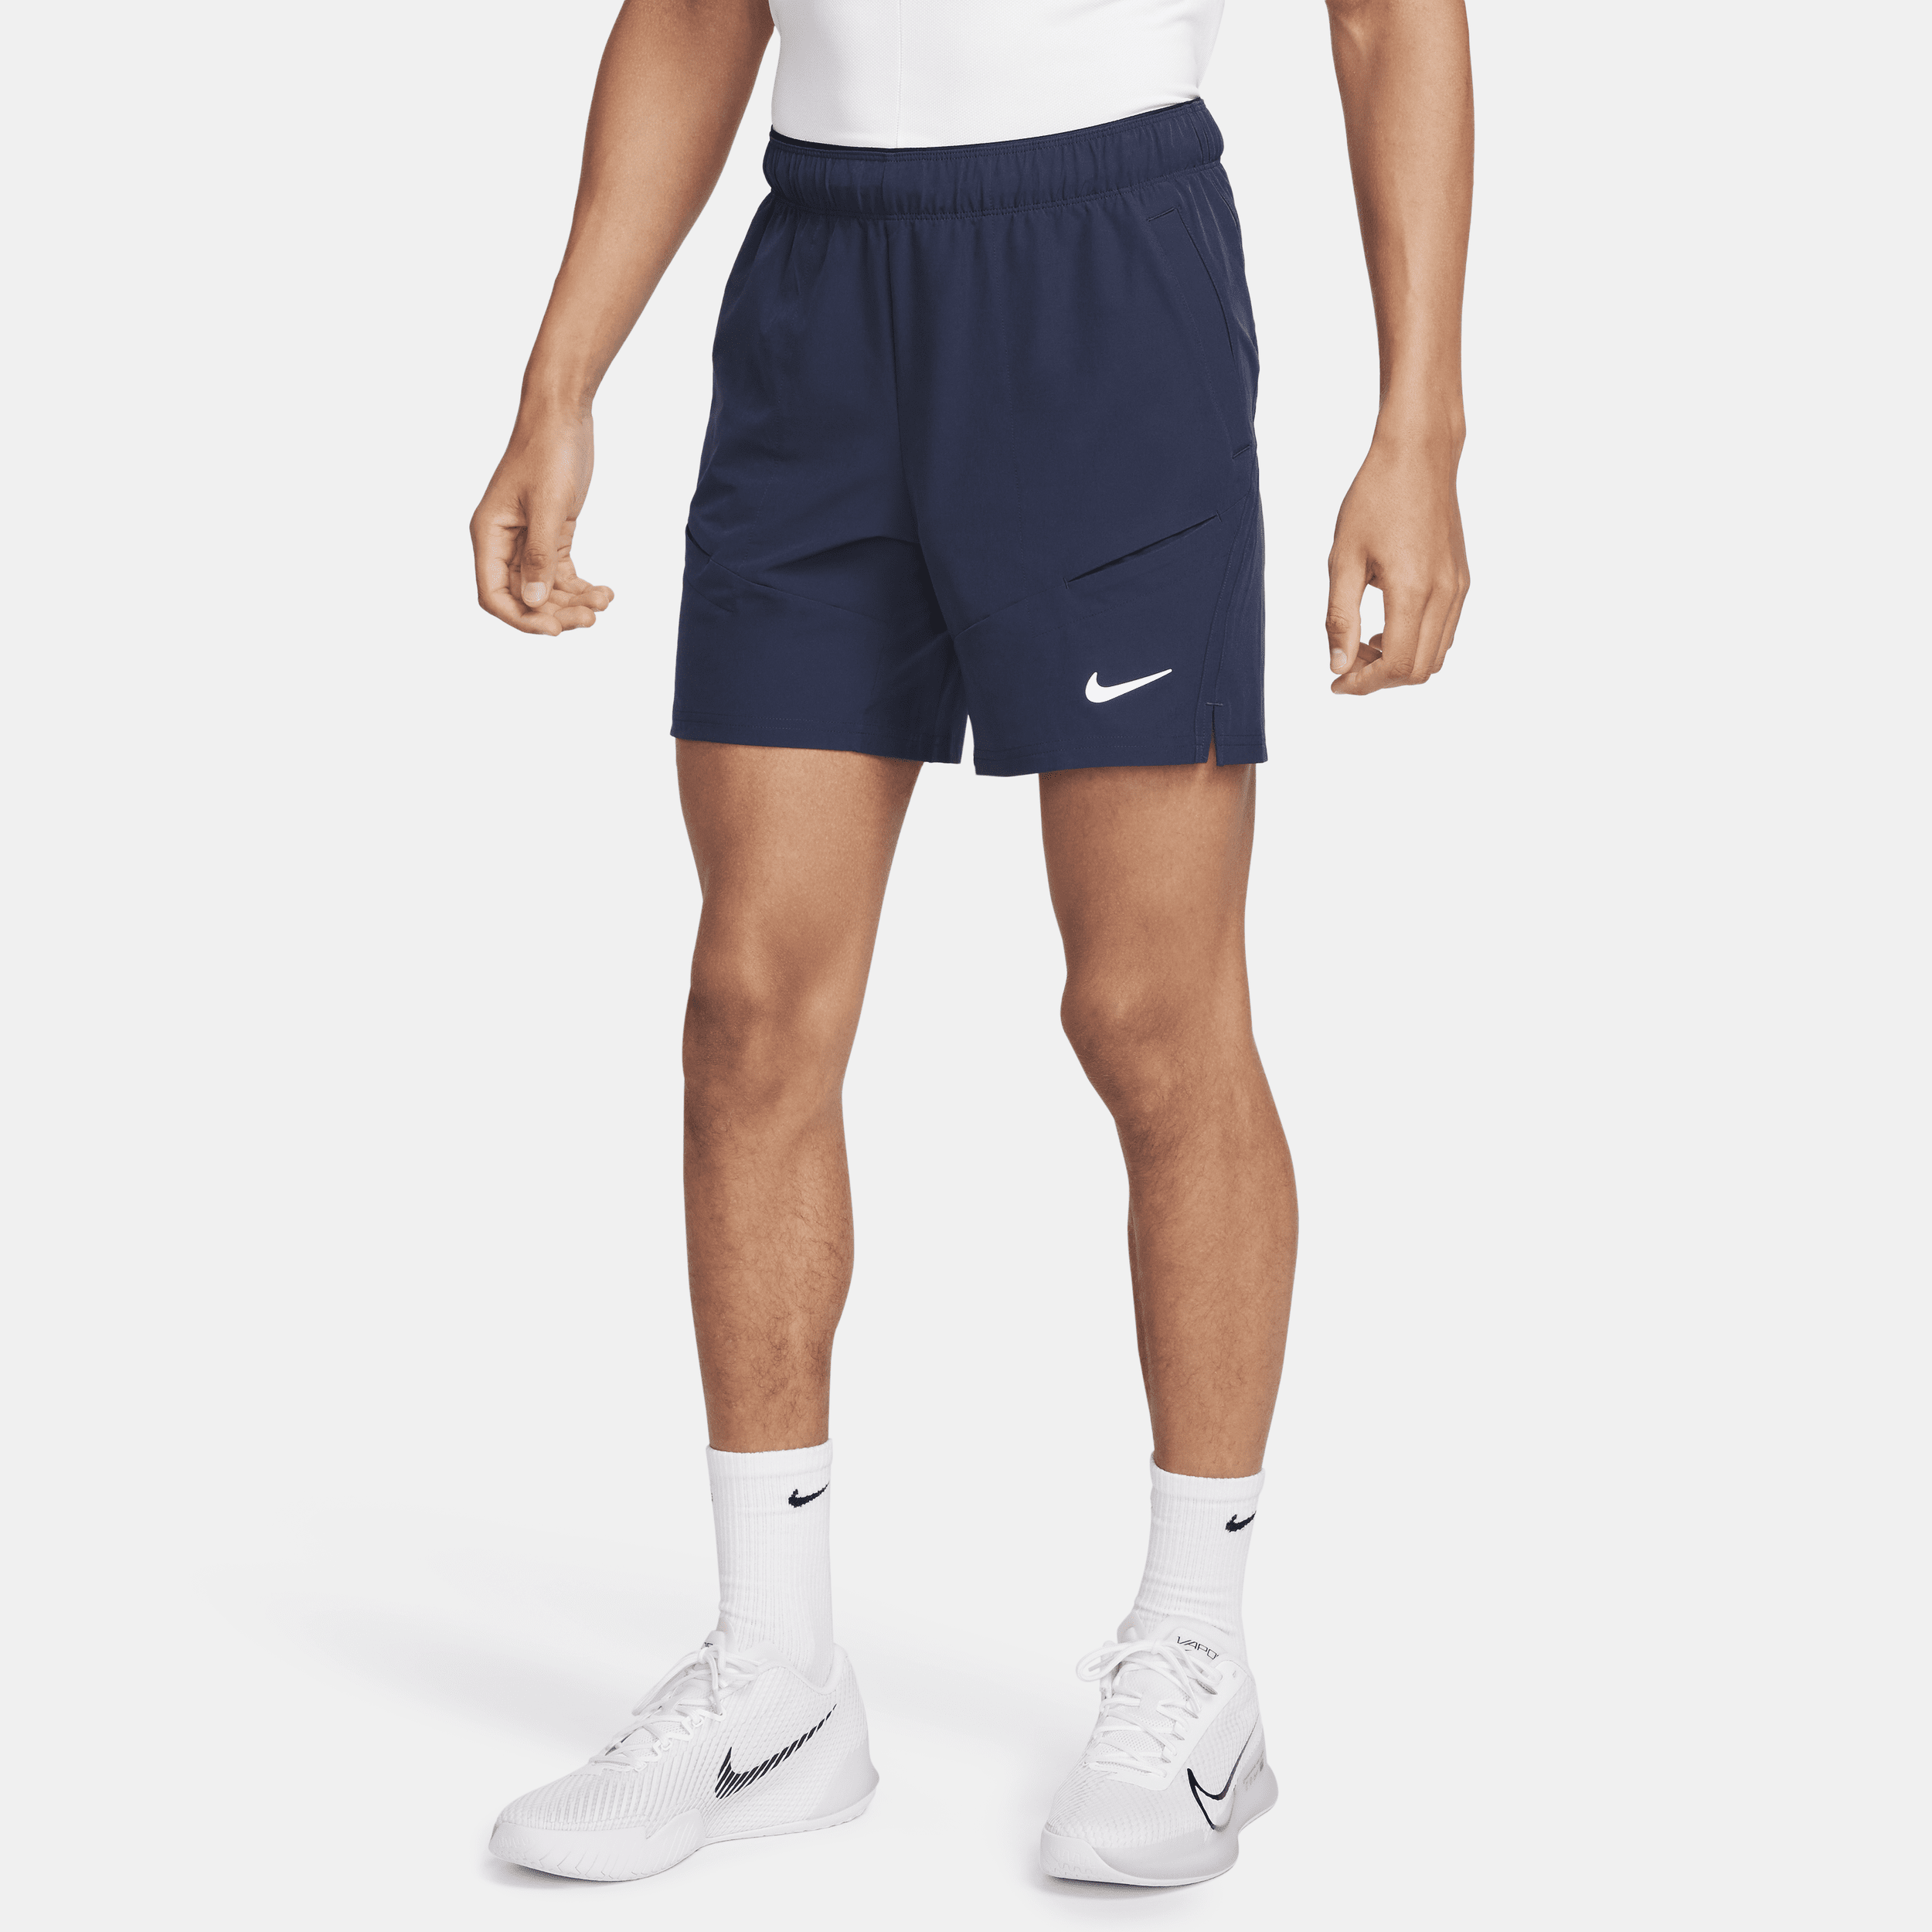 NikeCourt Advantage Dri-FIT-tennisshorts (18 cm) til mænd - blå